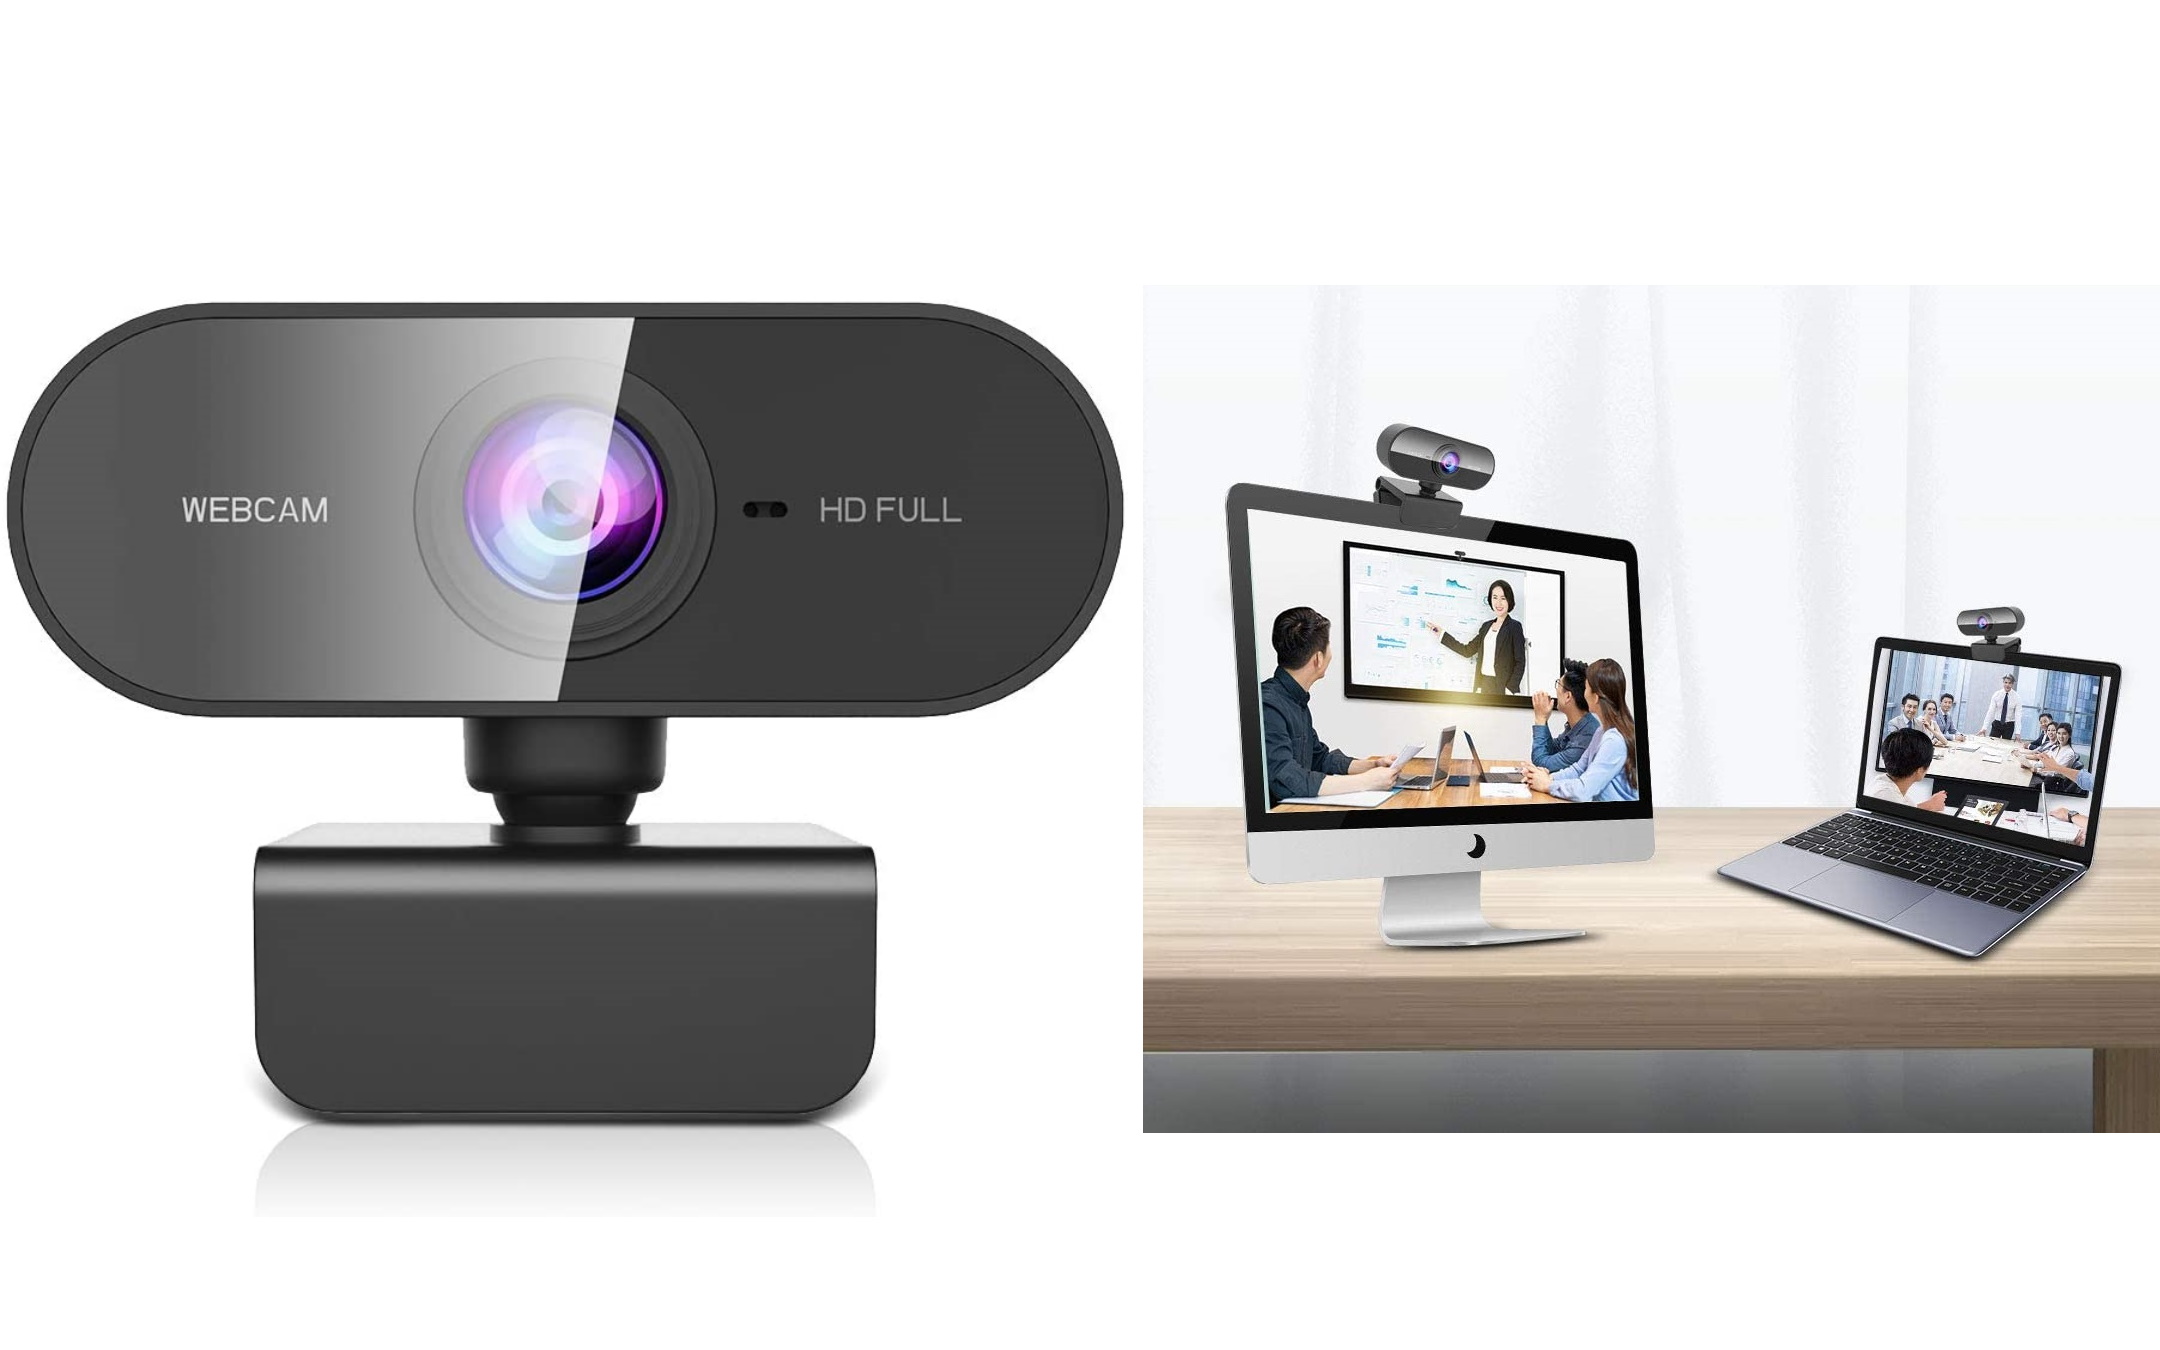 Webcam Full HD a meno di 20 euro su Amazon